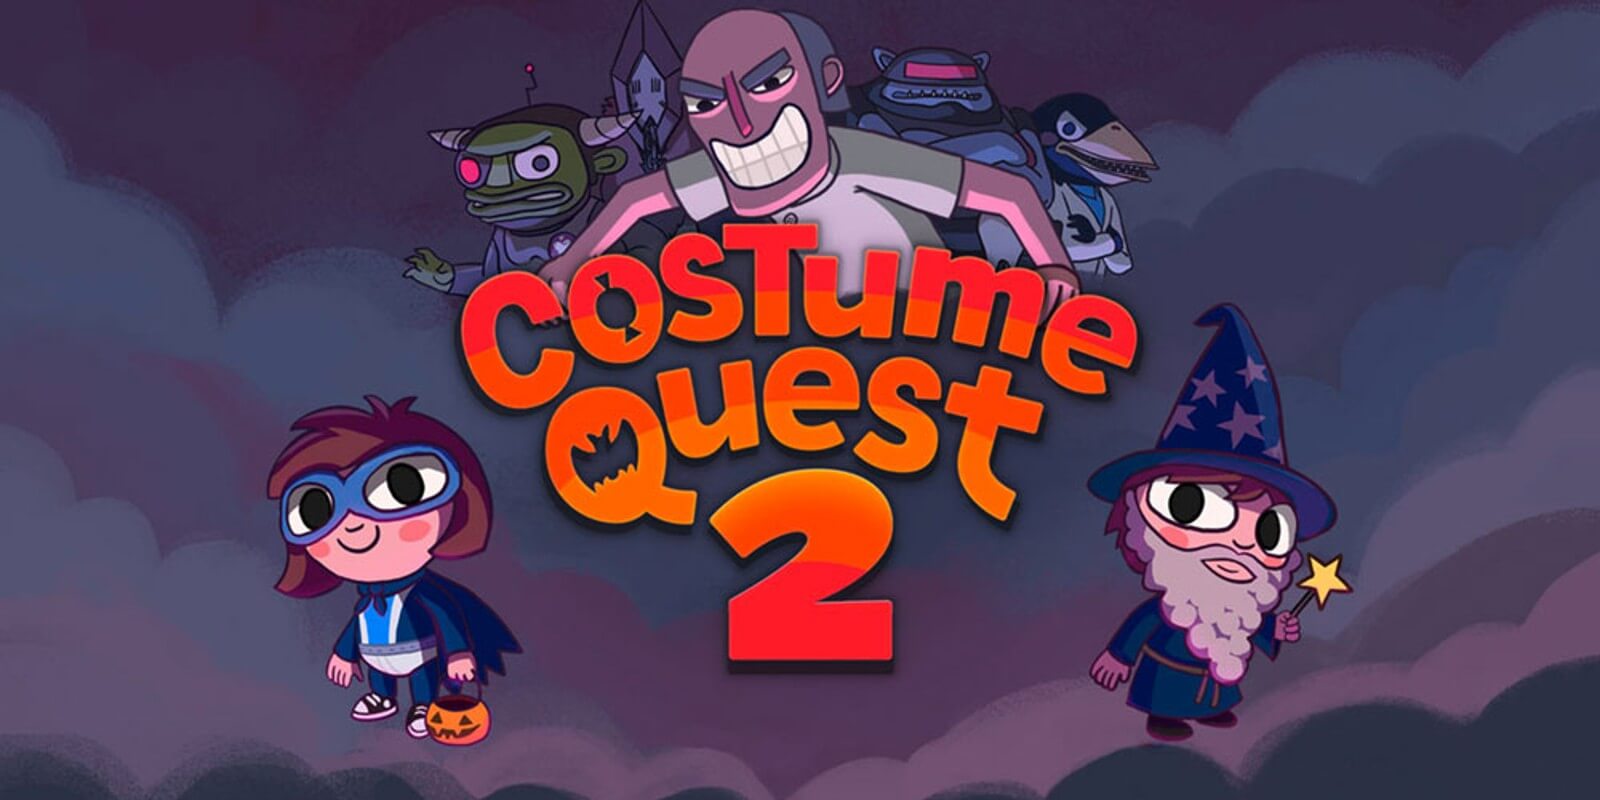 Costume Quest 2 za darmo na Epic Games Store